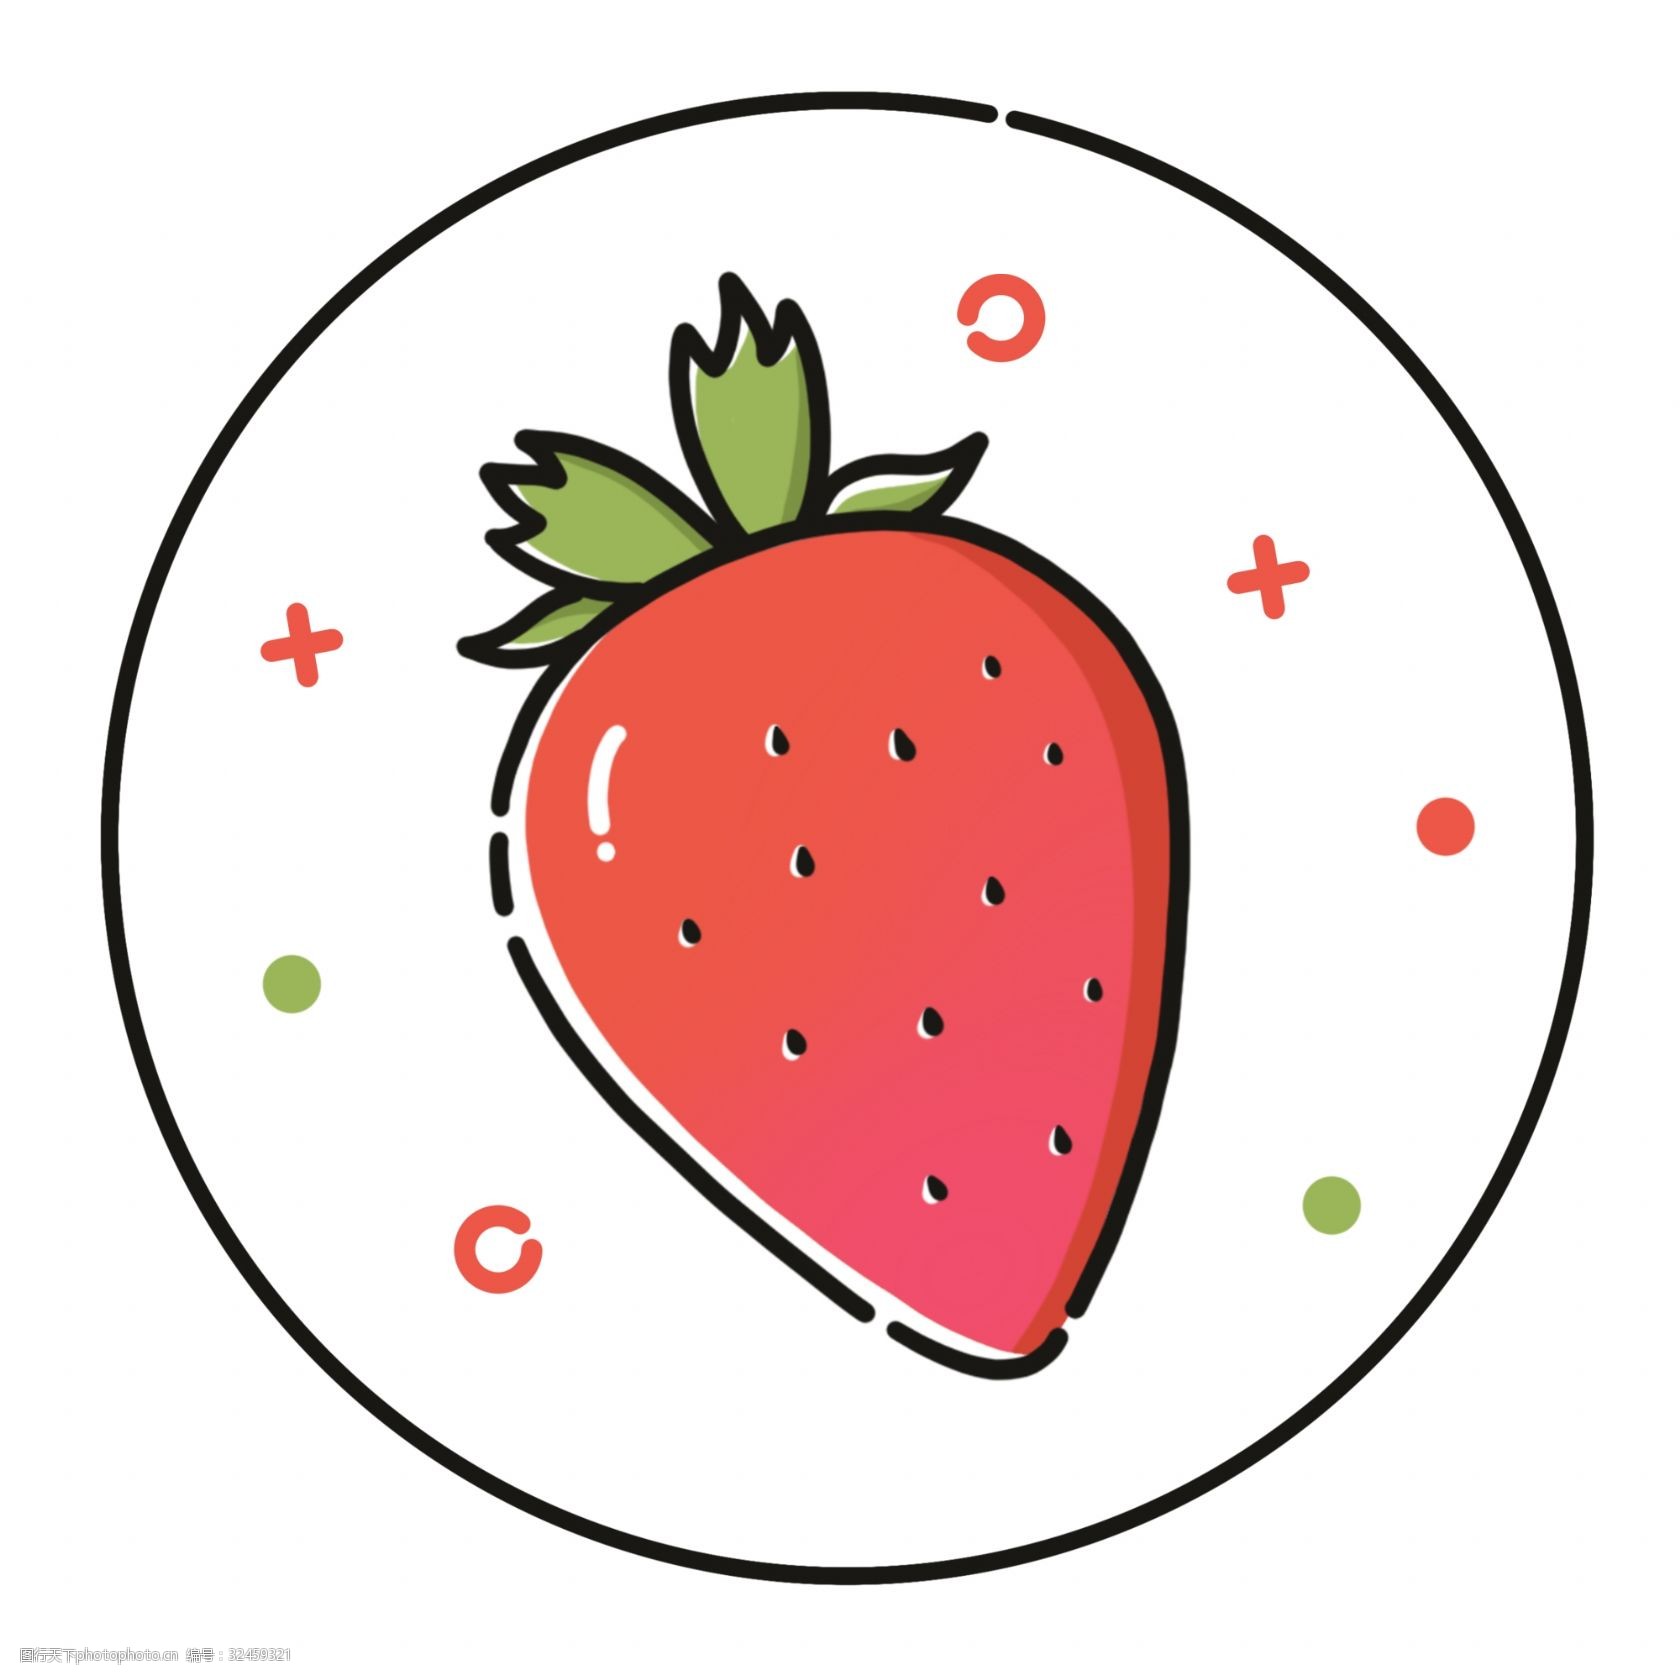 关键词:meb草莓卡通png素材 meb草莓 可爱草莓 简约草莓 手绘草莓